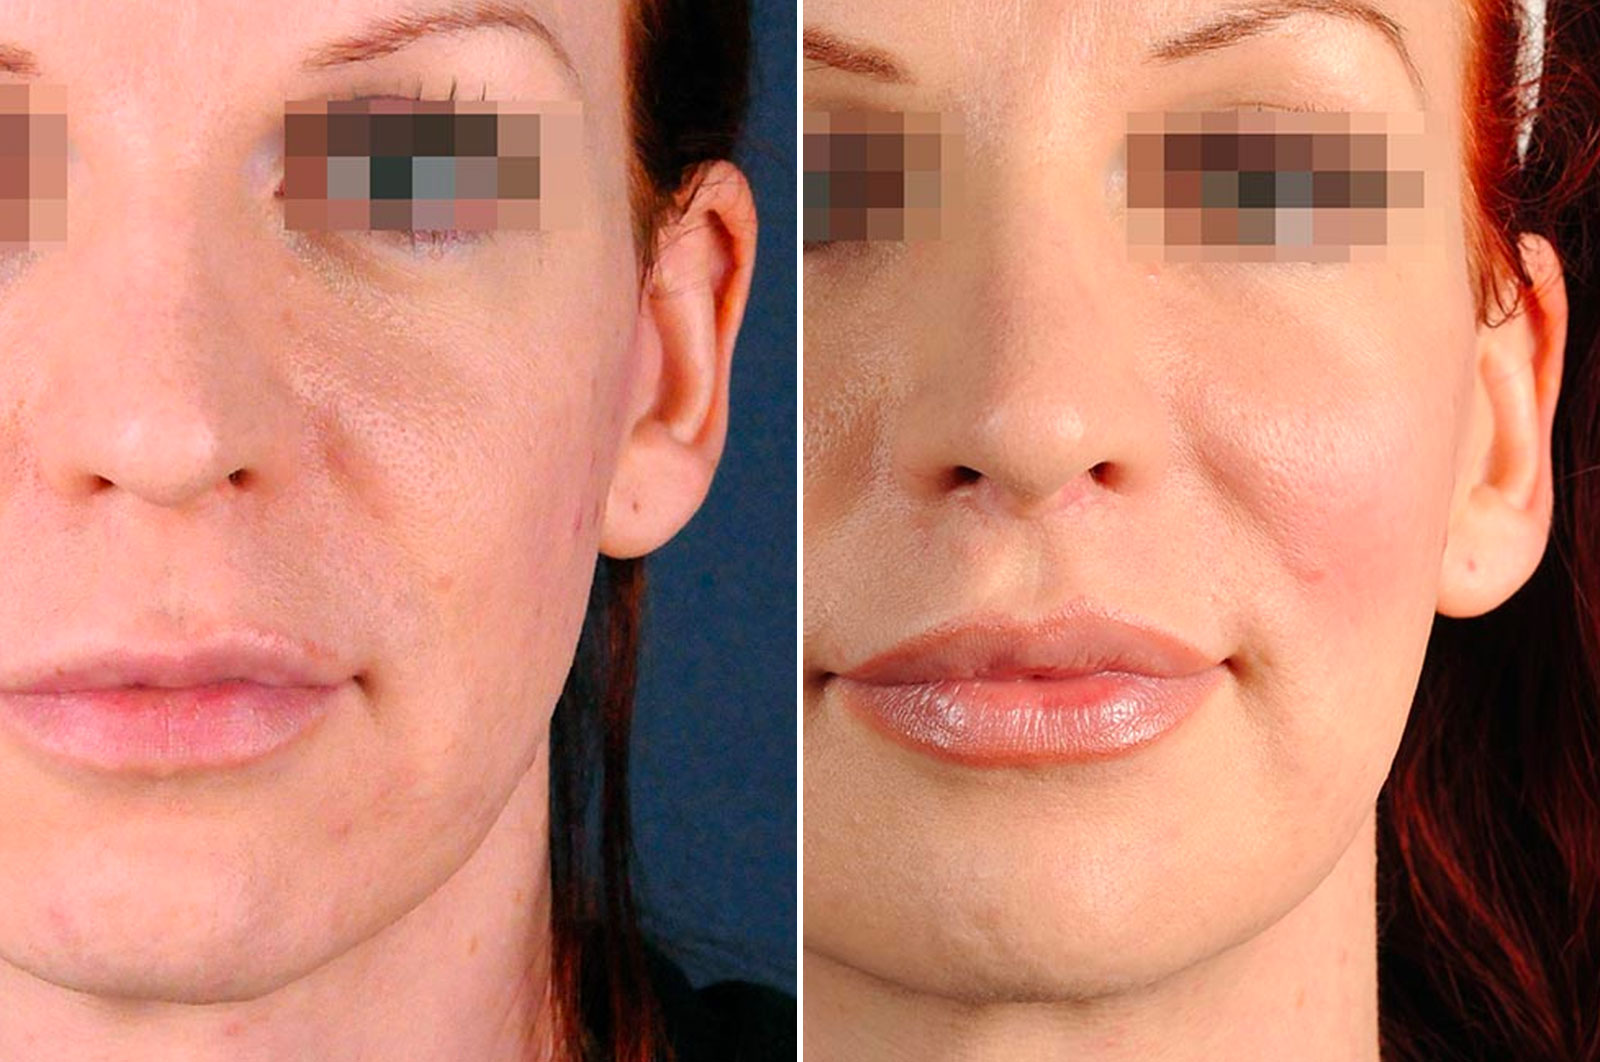 2passclinic before and after transwomen facial feminization FFS mtf antwerp facelift surgery